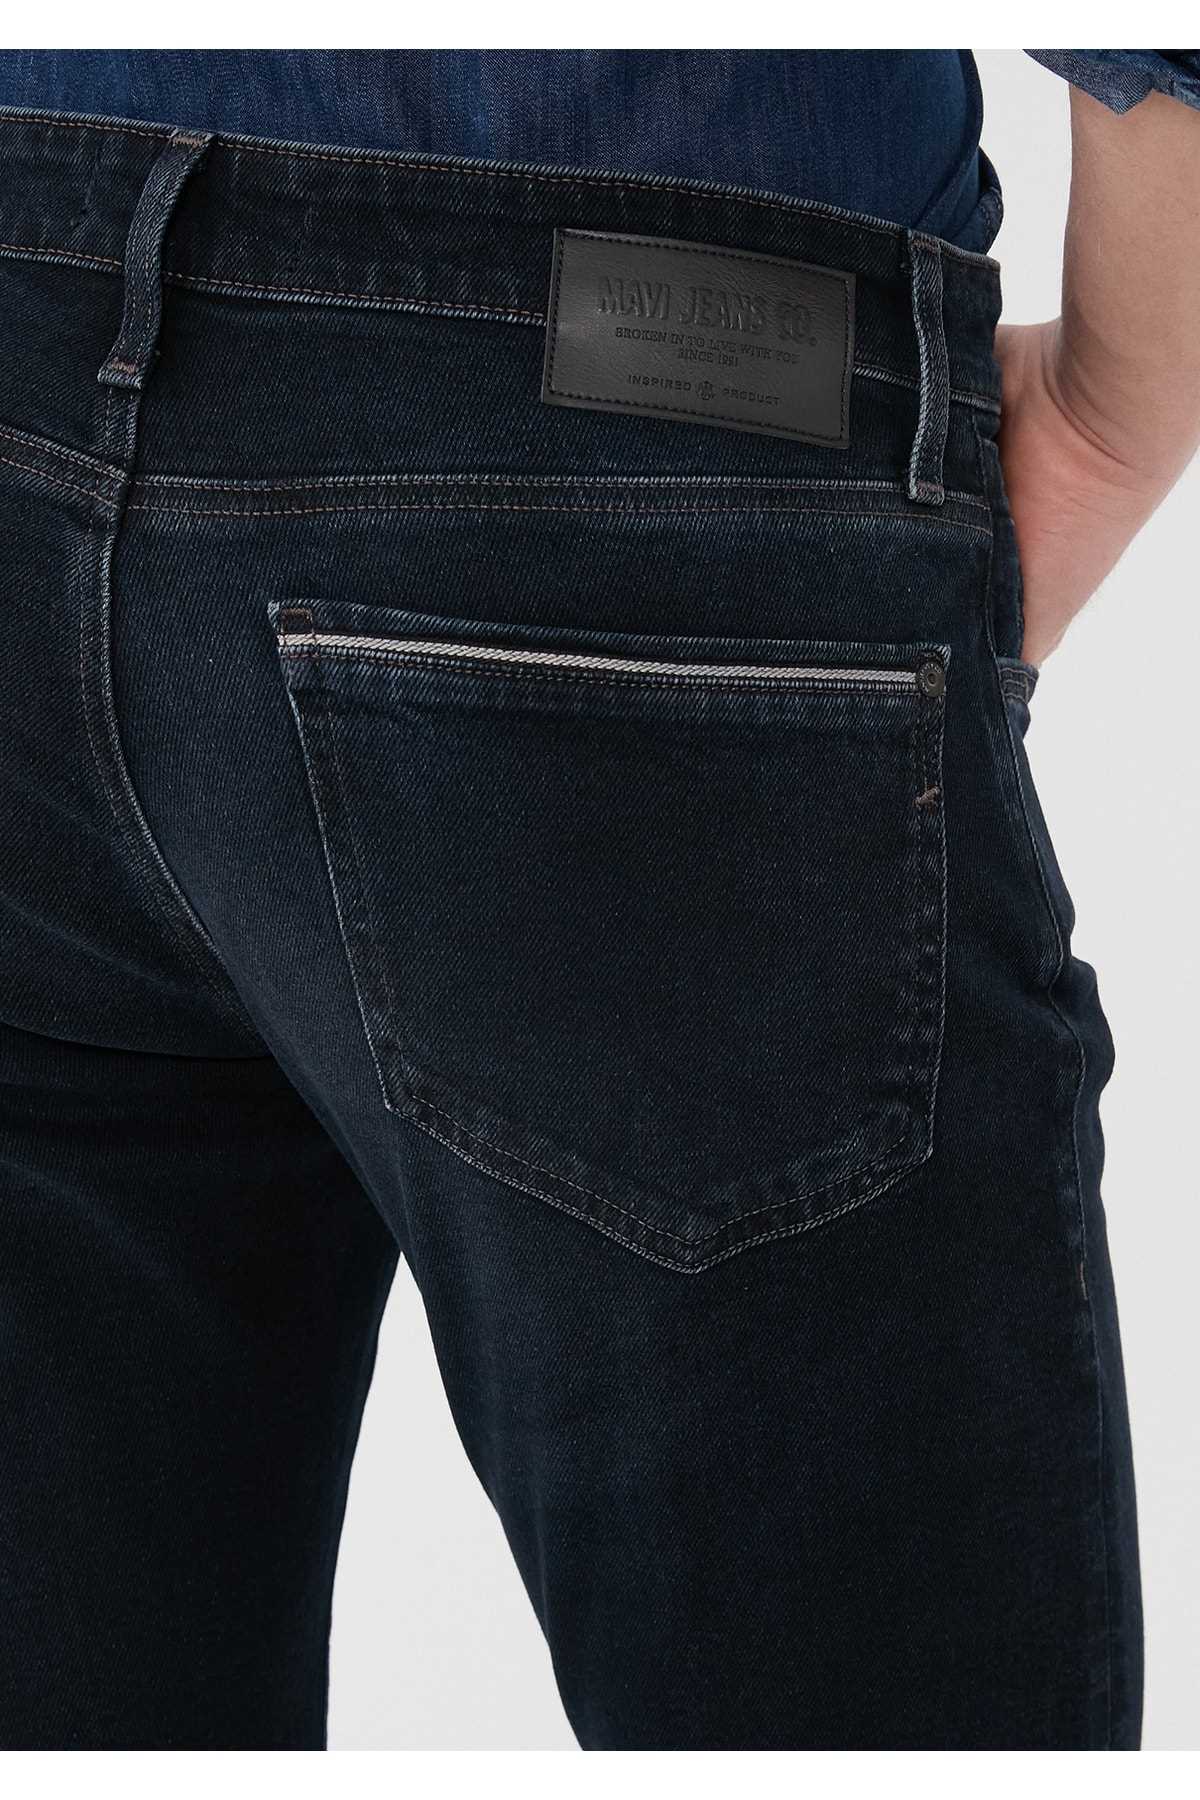 خرید مدل شلوار جین مردانه شیک ماوی Mavi-31957 ty49706410